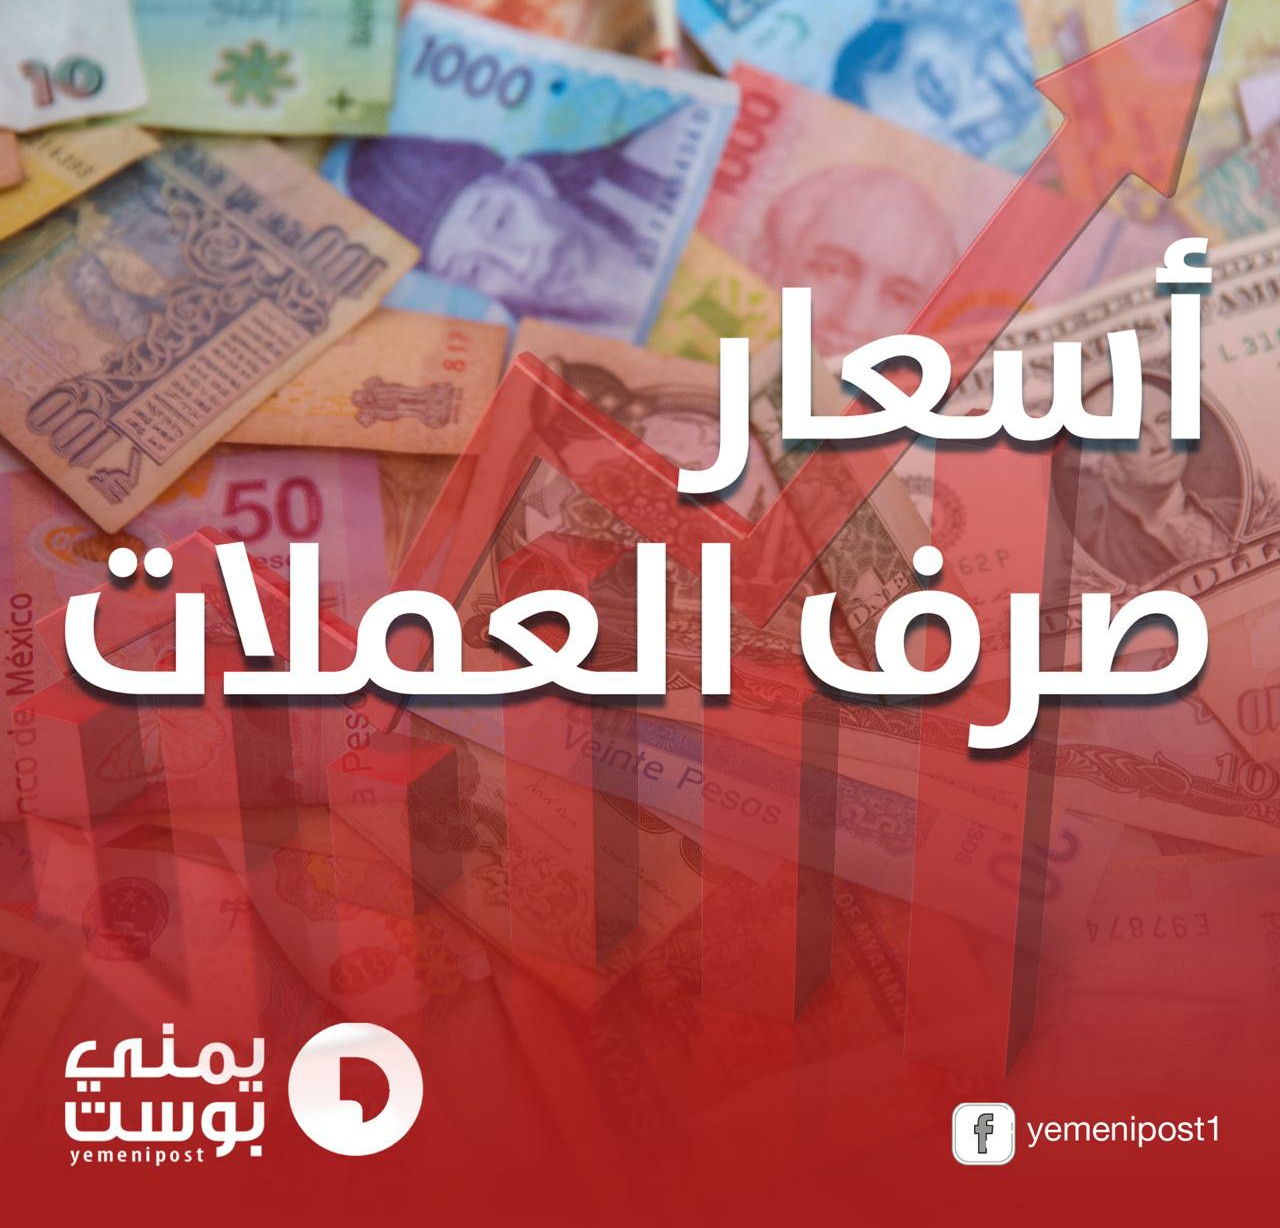 عاجل : ارتفاع صادم وغير متوقع للعملات الأجنبية أمام الريال اليمني في أسعار الصرف مساء اليوم 